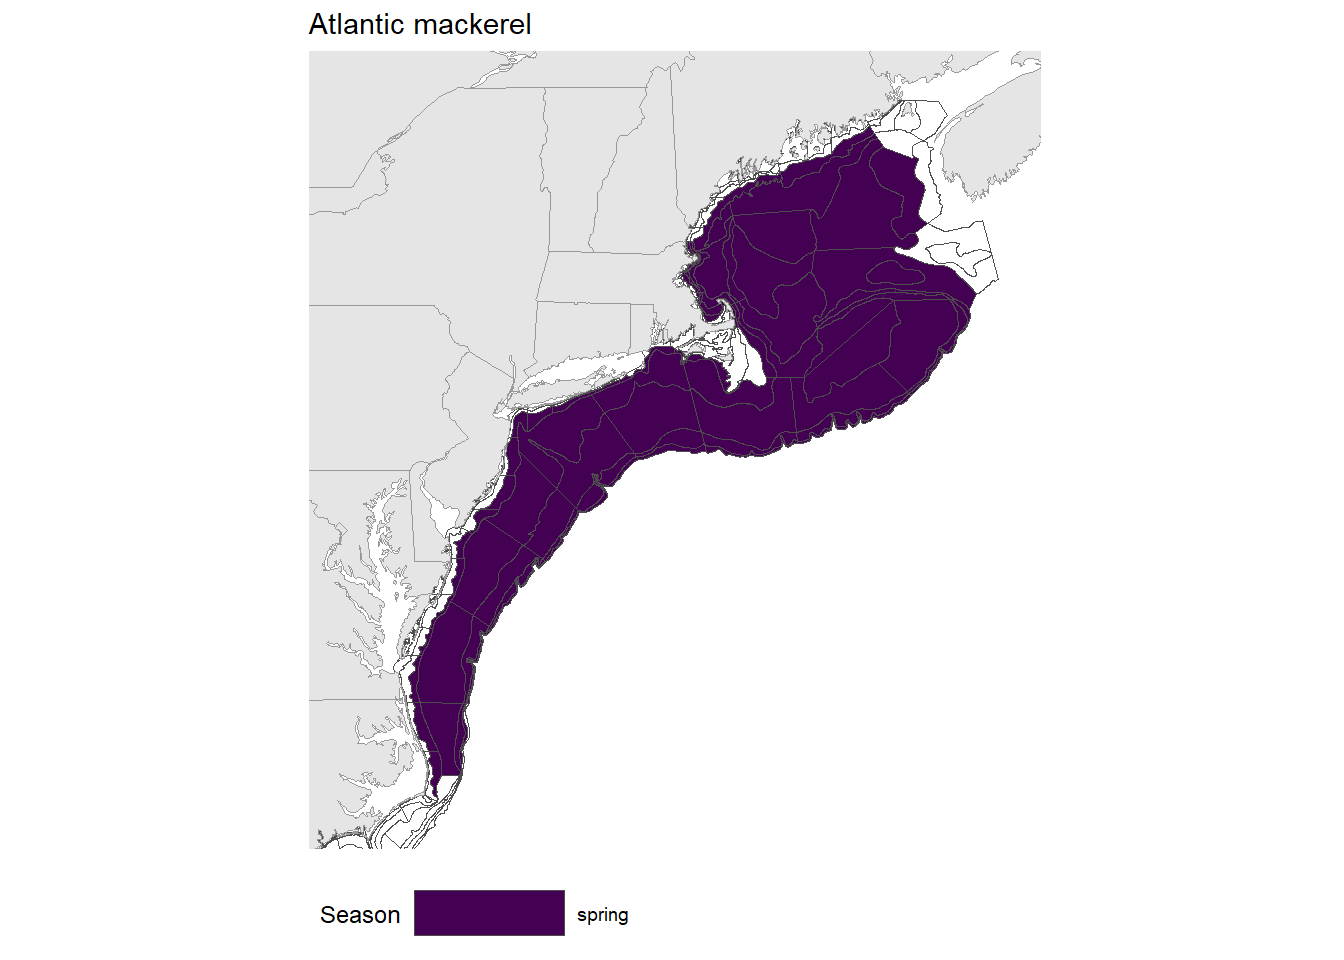 Strata map for the Atlantic mackerel (Scomber scombrus) stock on the NE shelf.